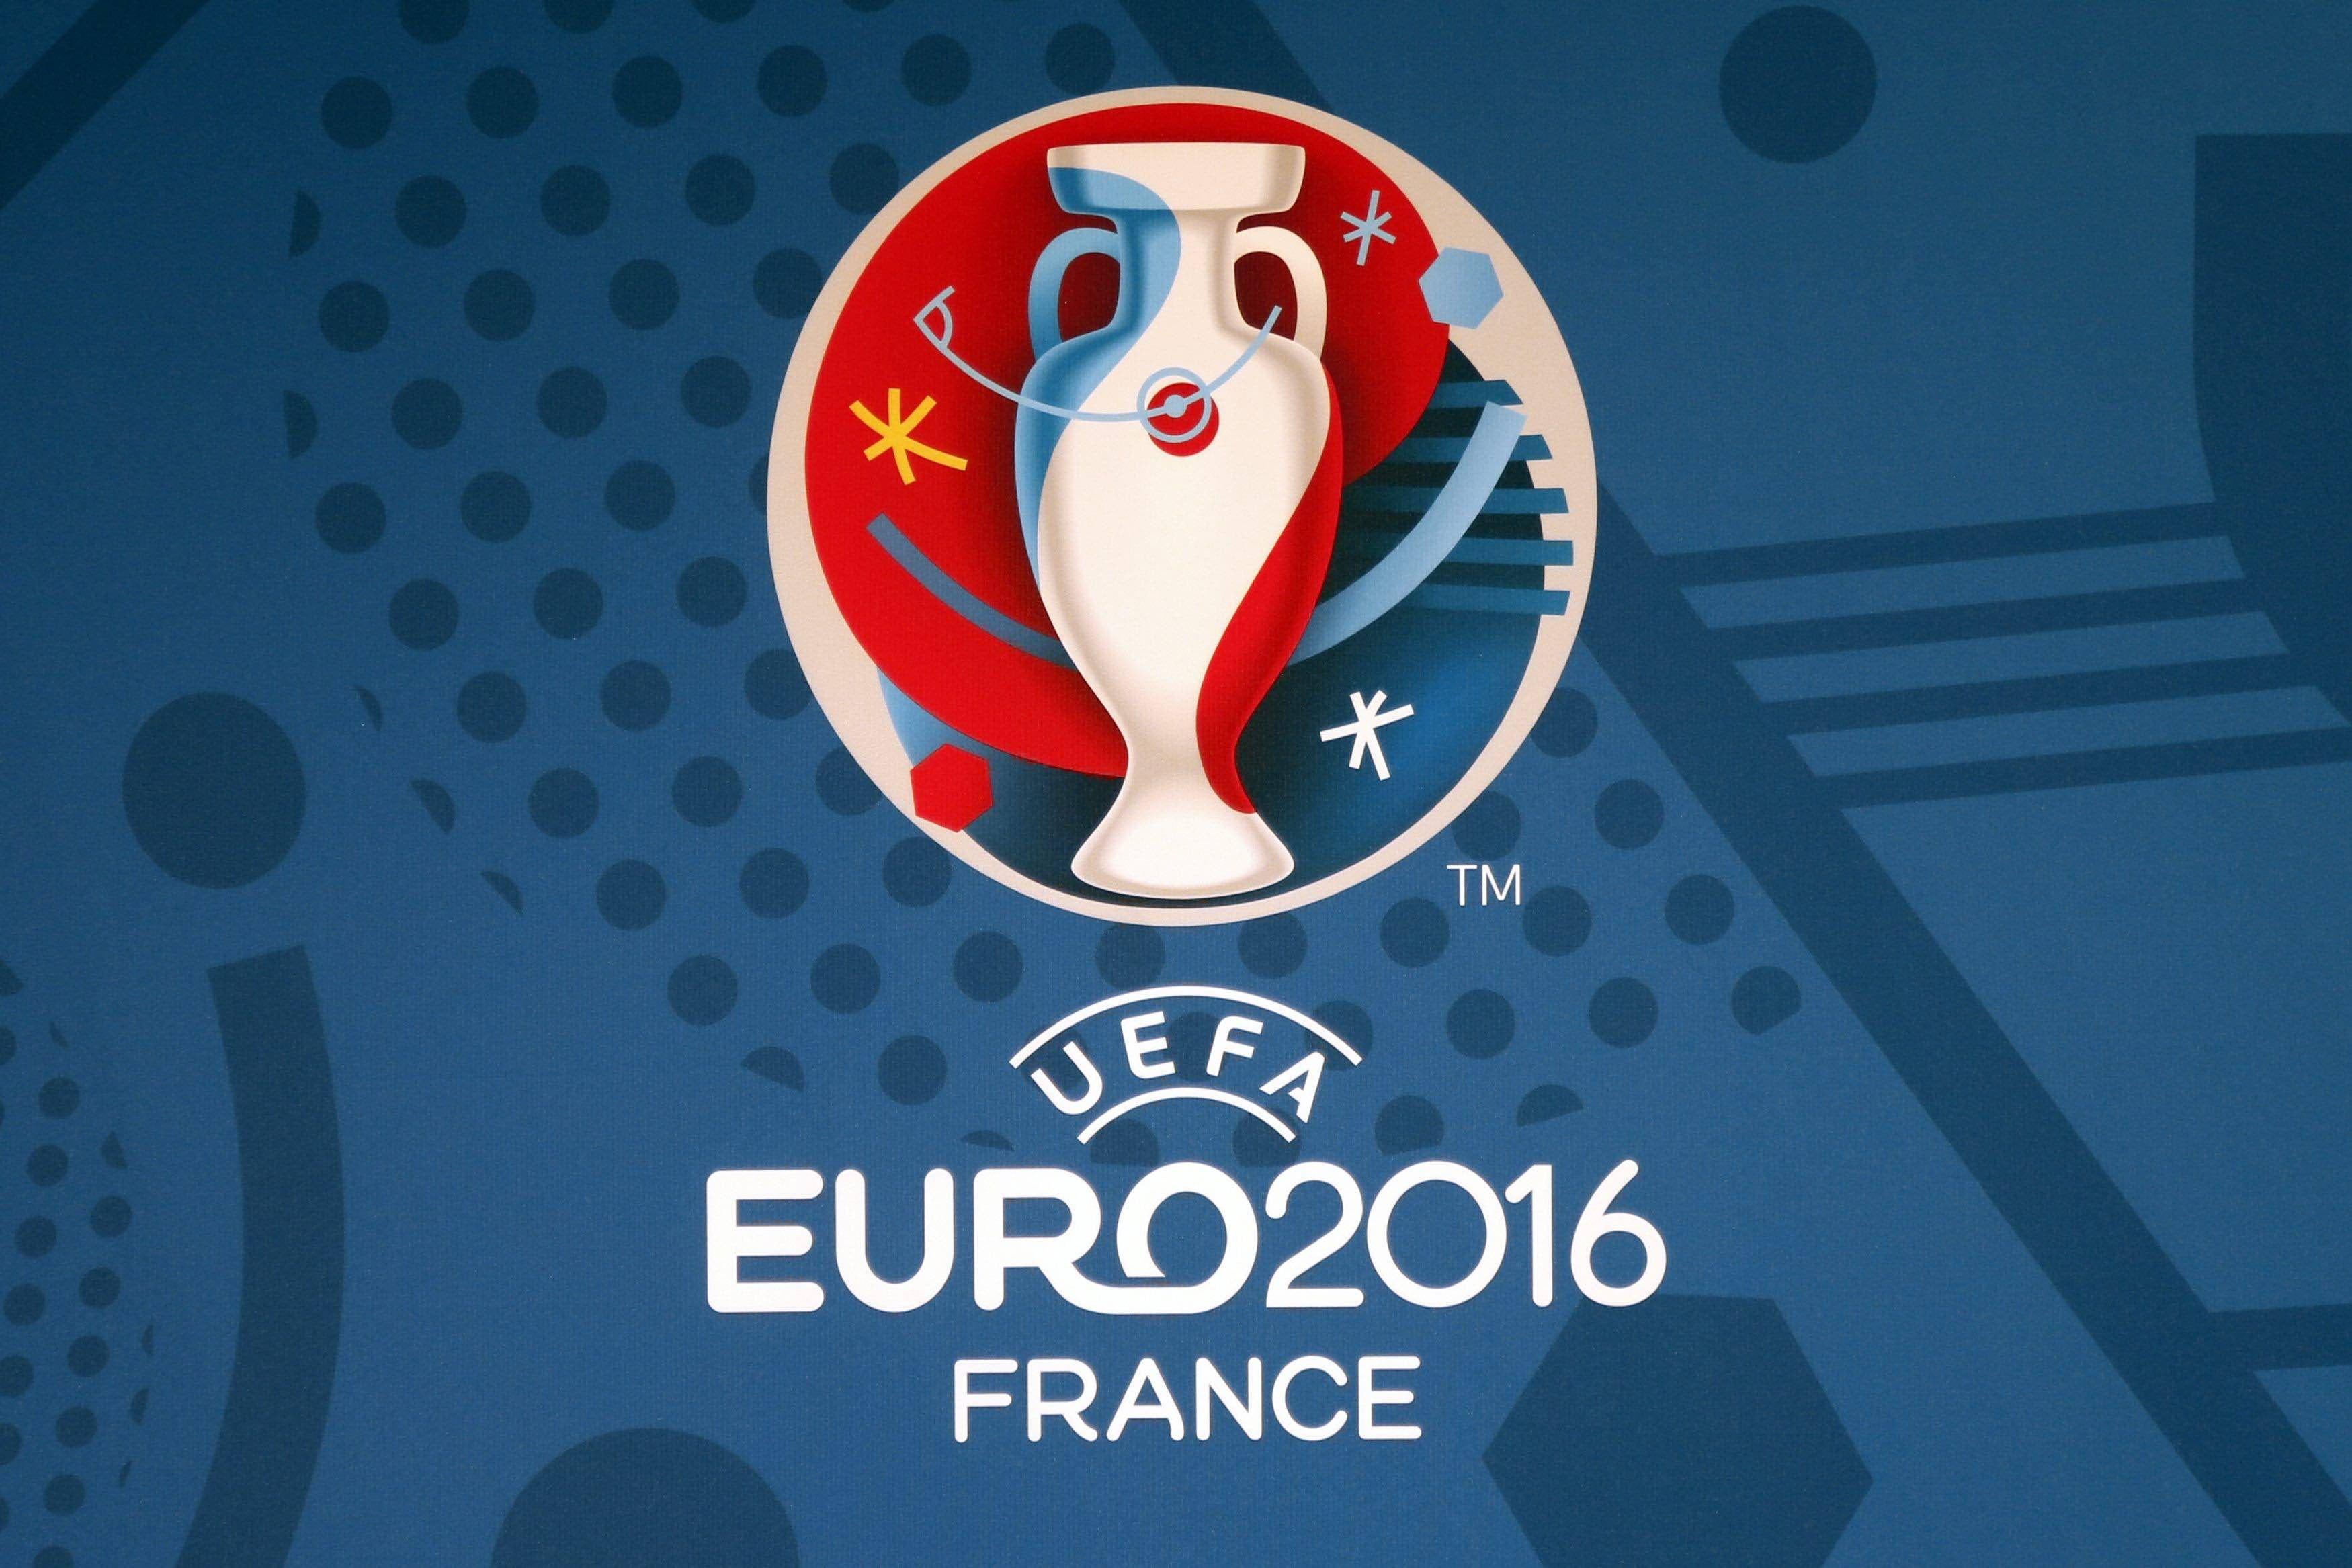 UEFA Euro 2016 France logo HD wallpaper